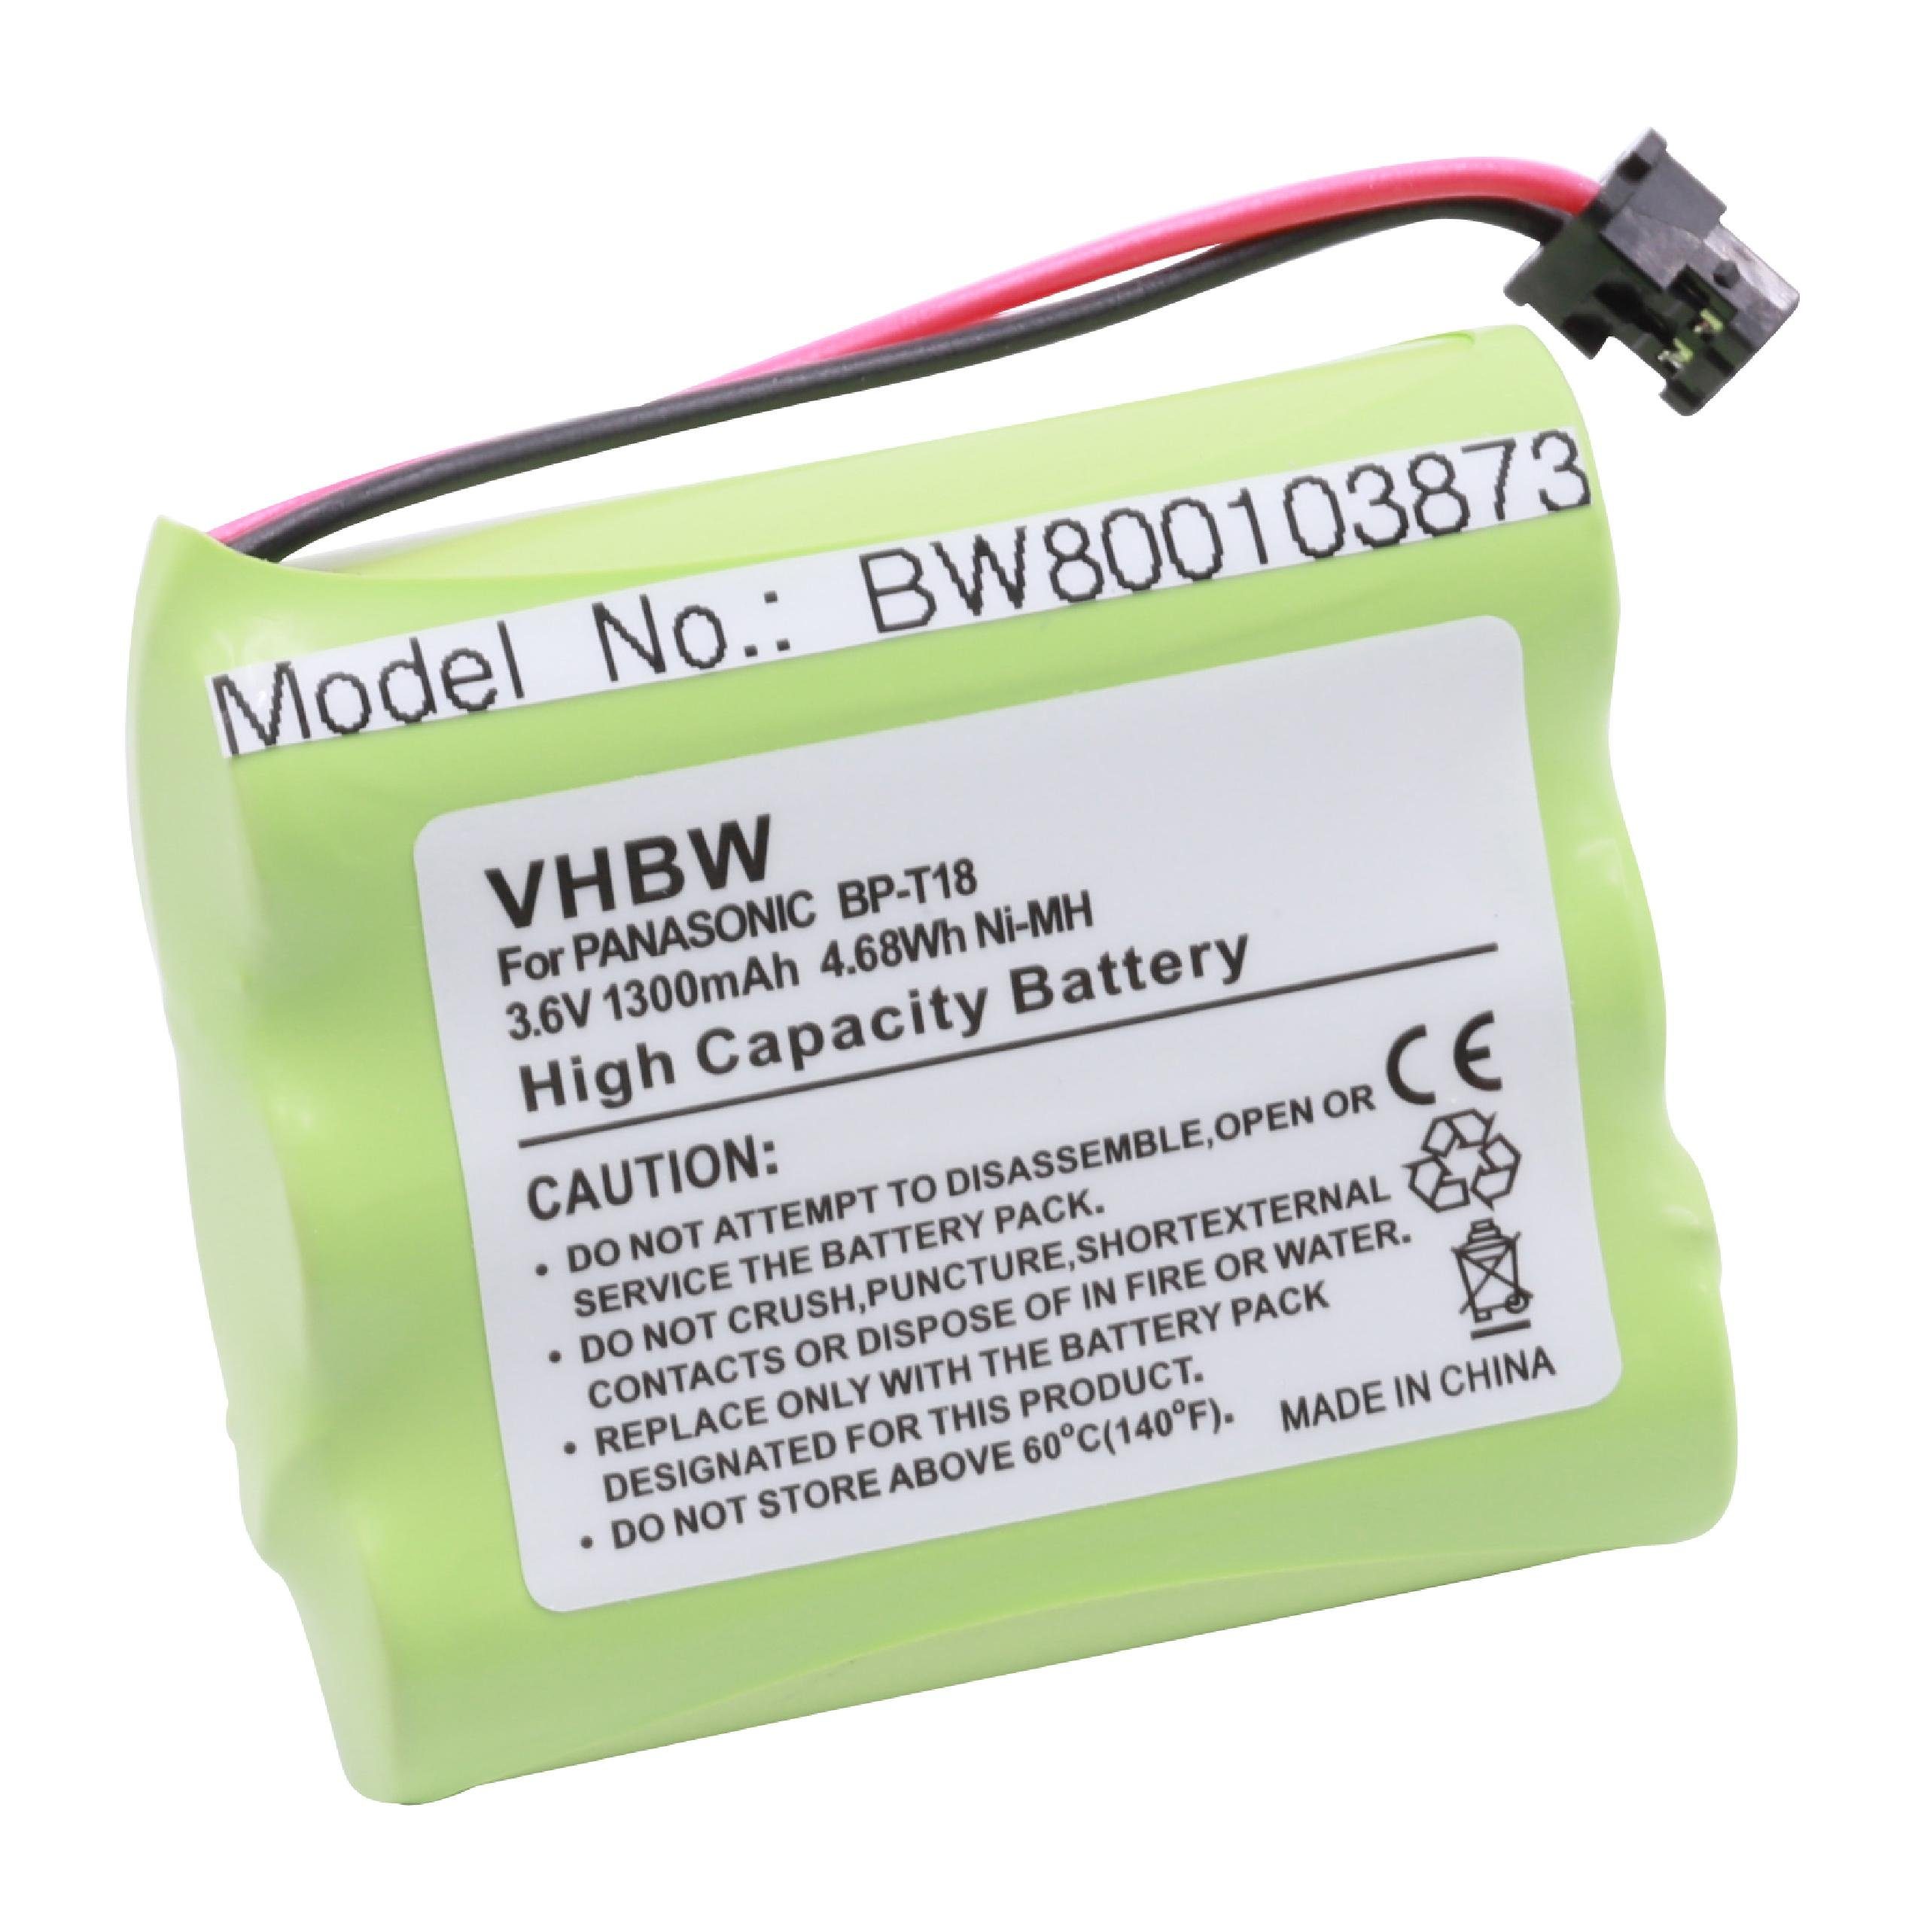 mit CP-1218 kompatibel Casio NiMH Akku mAh 1300 V) vhbw (3,6